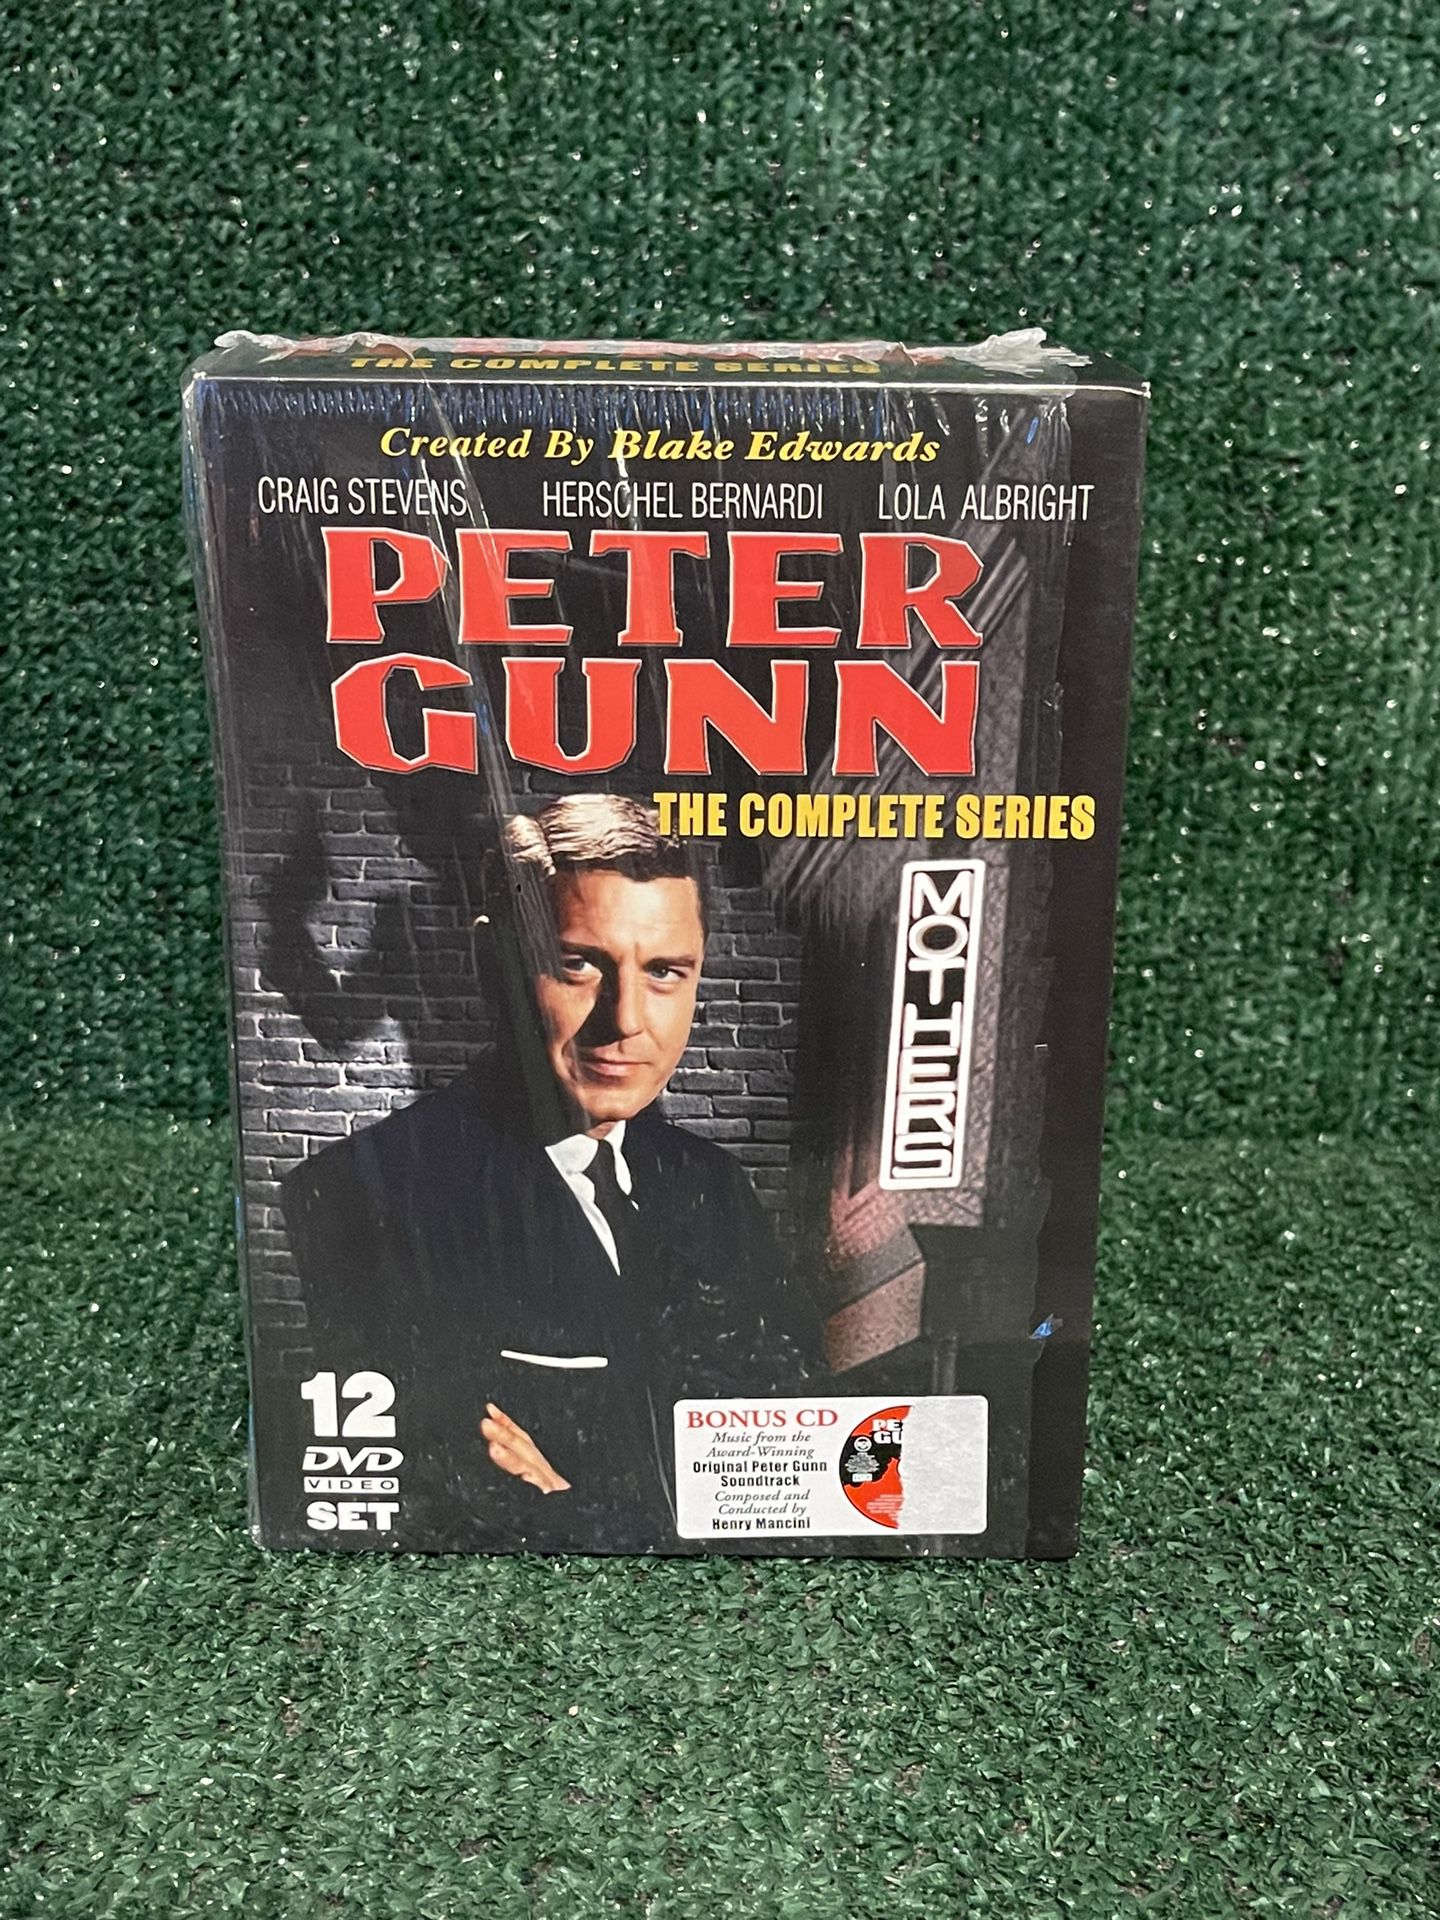 Peter Gunn: The Complete Series DVD 12 Disc Set Craig Steven’s Bernardi Albright 